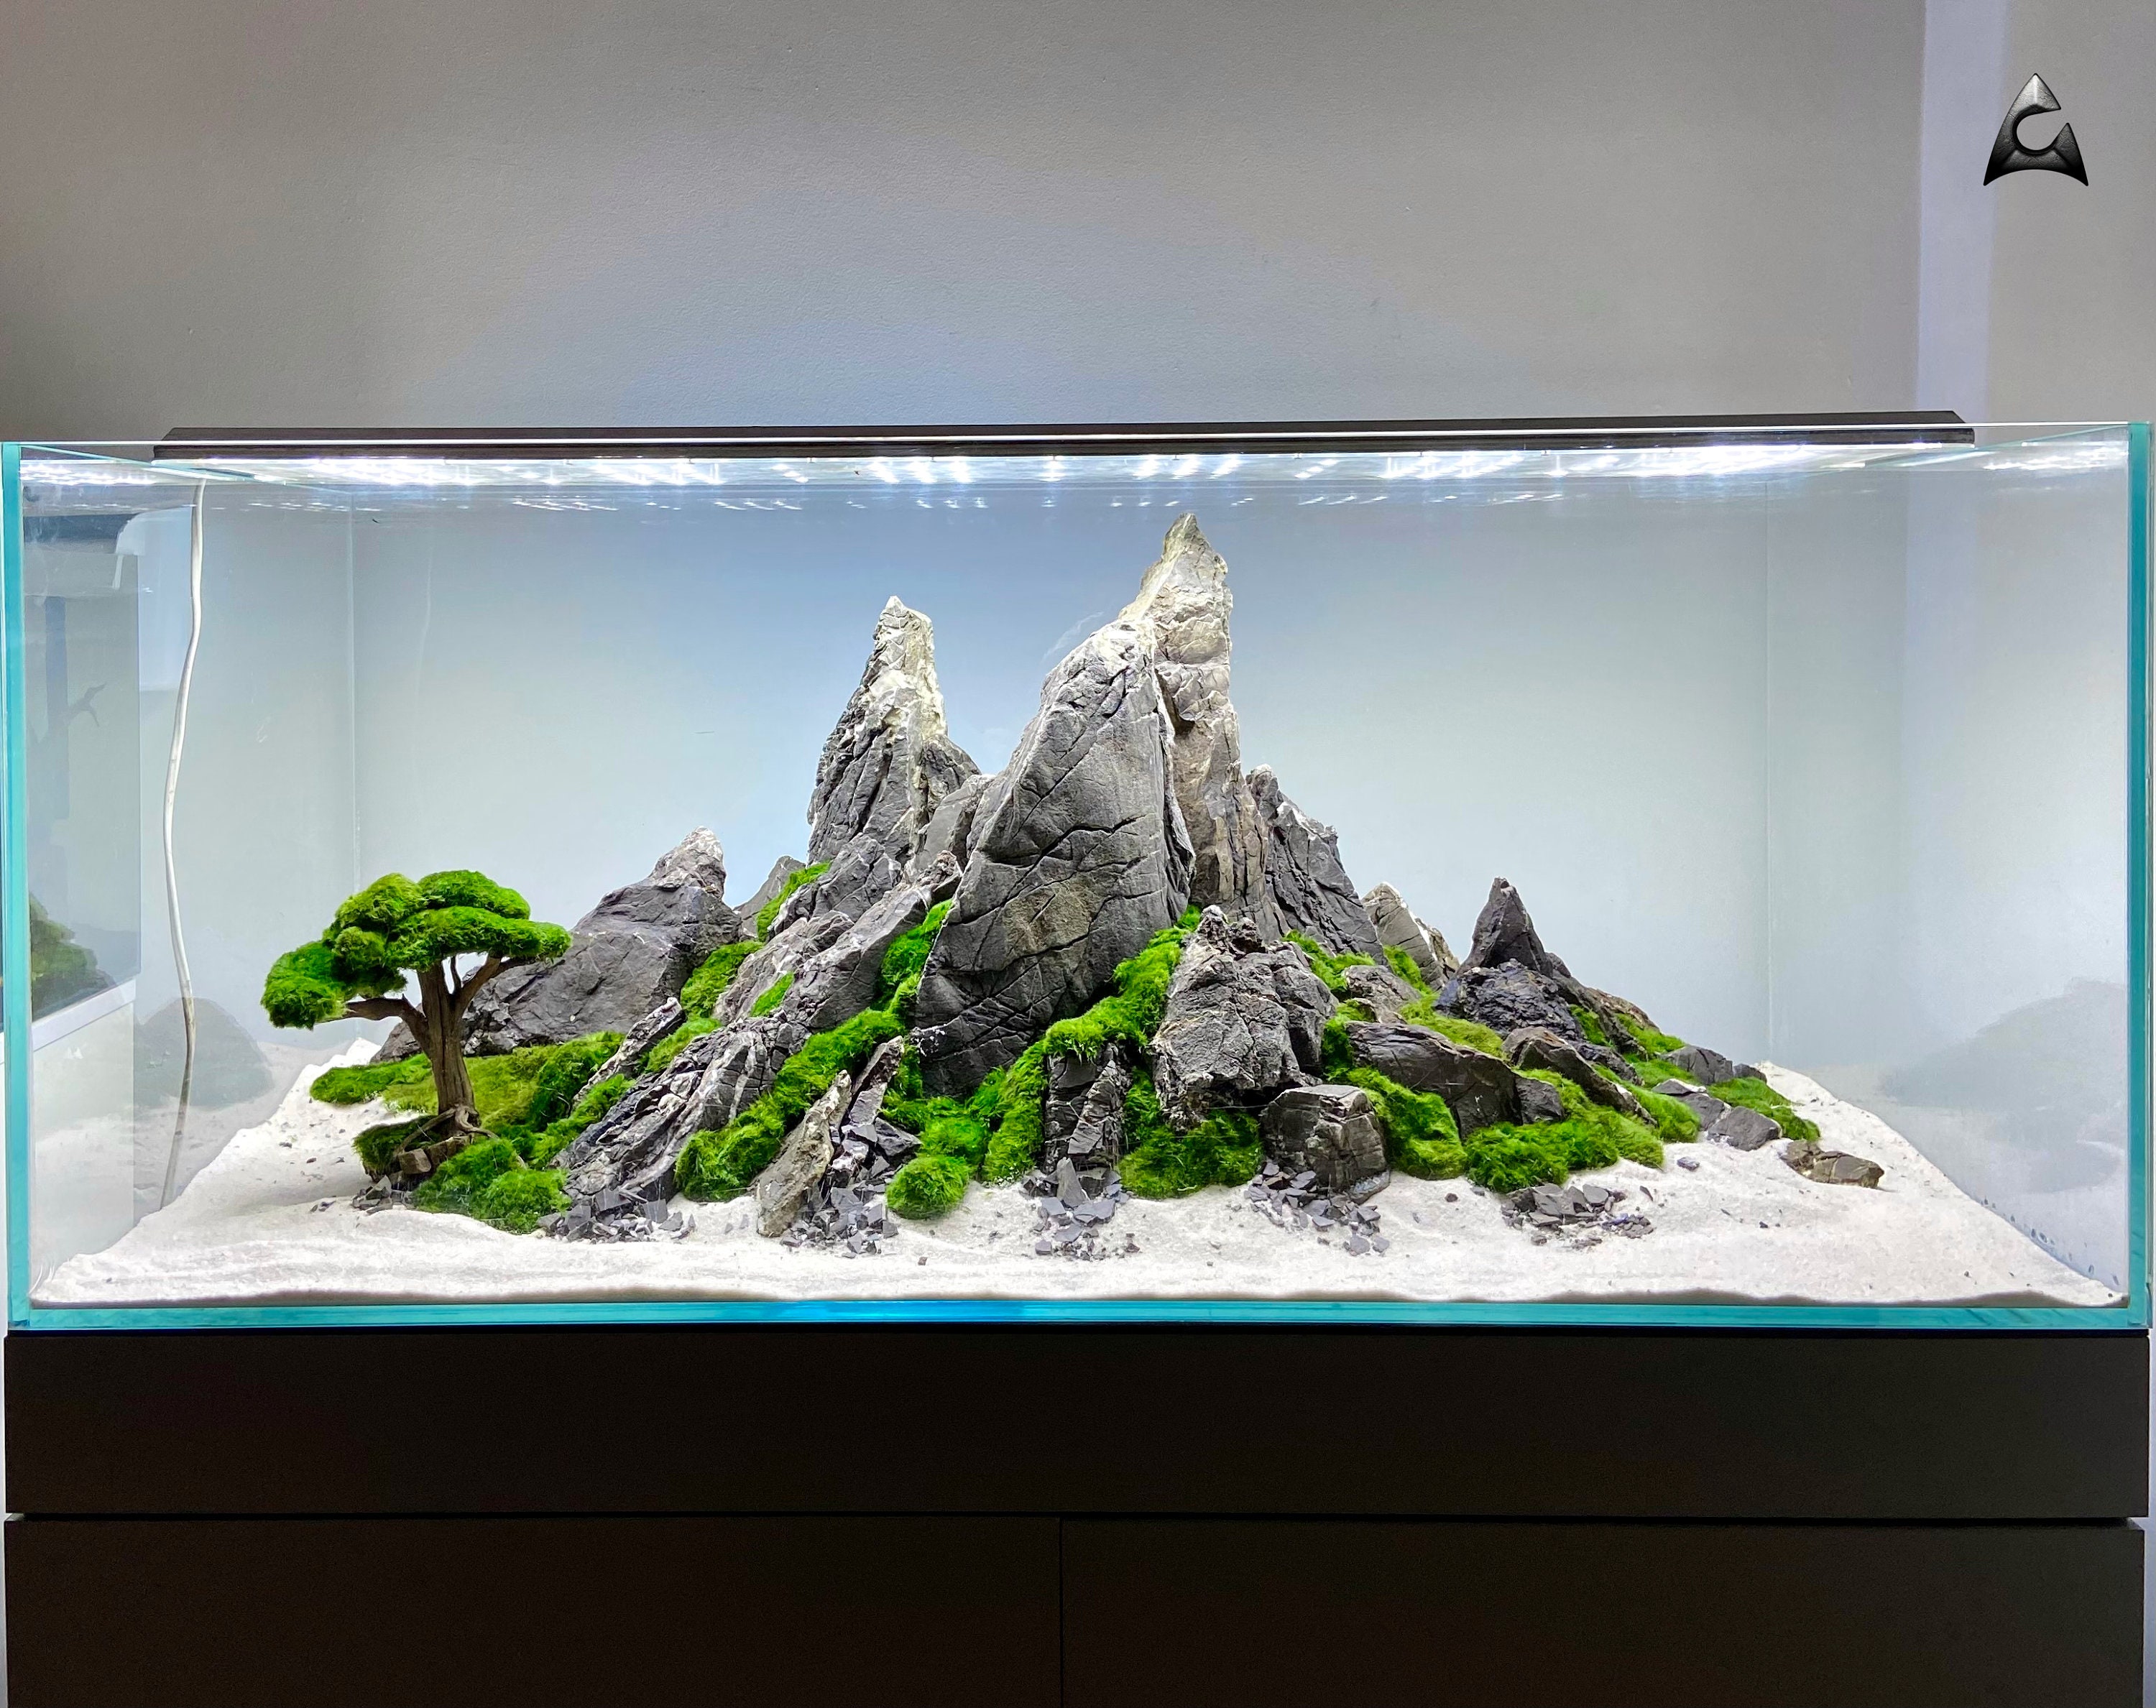 Aquarium Rocks Penjing Aquascape Landscape Fish Tank Decorations